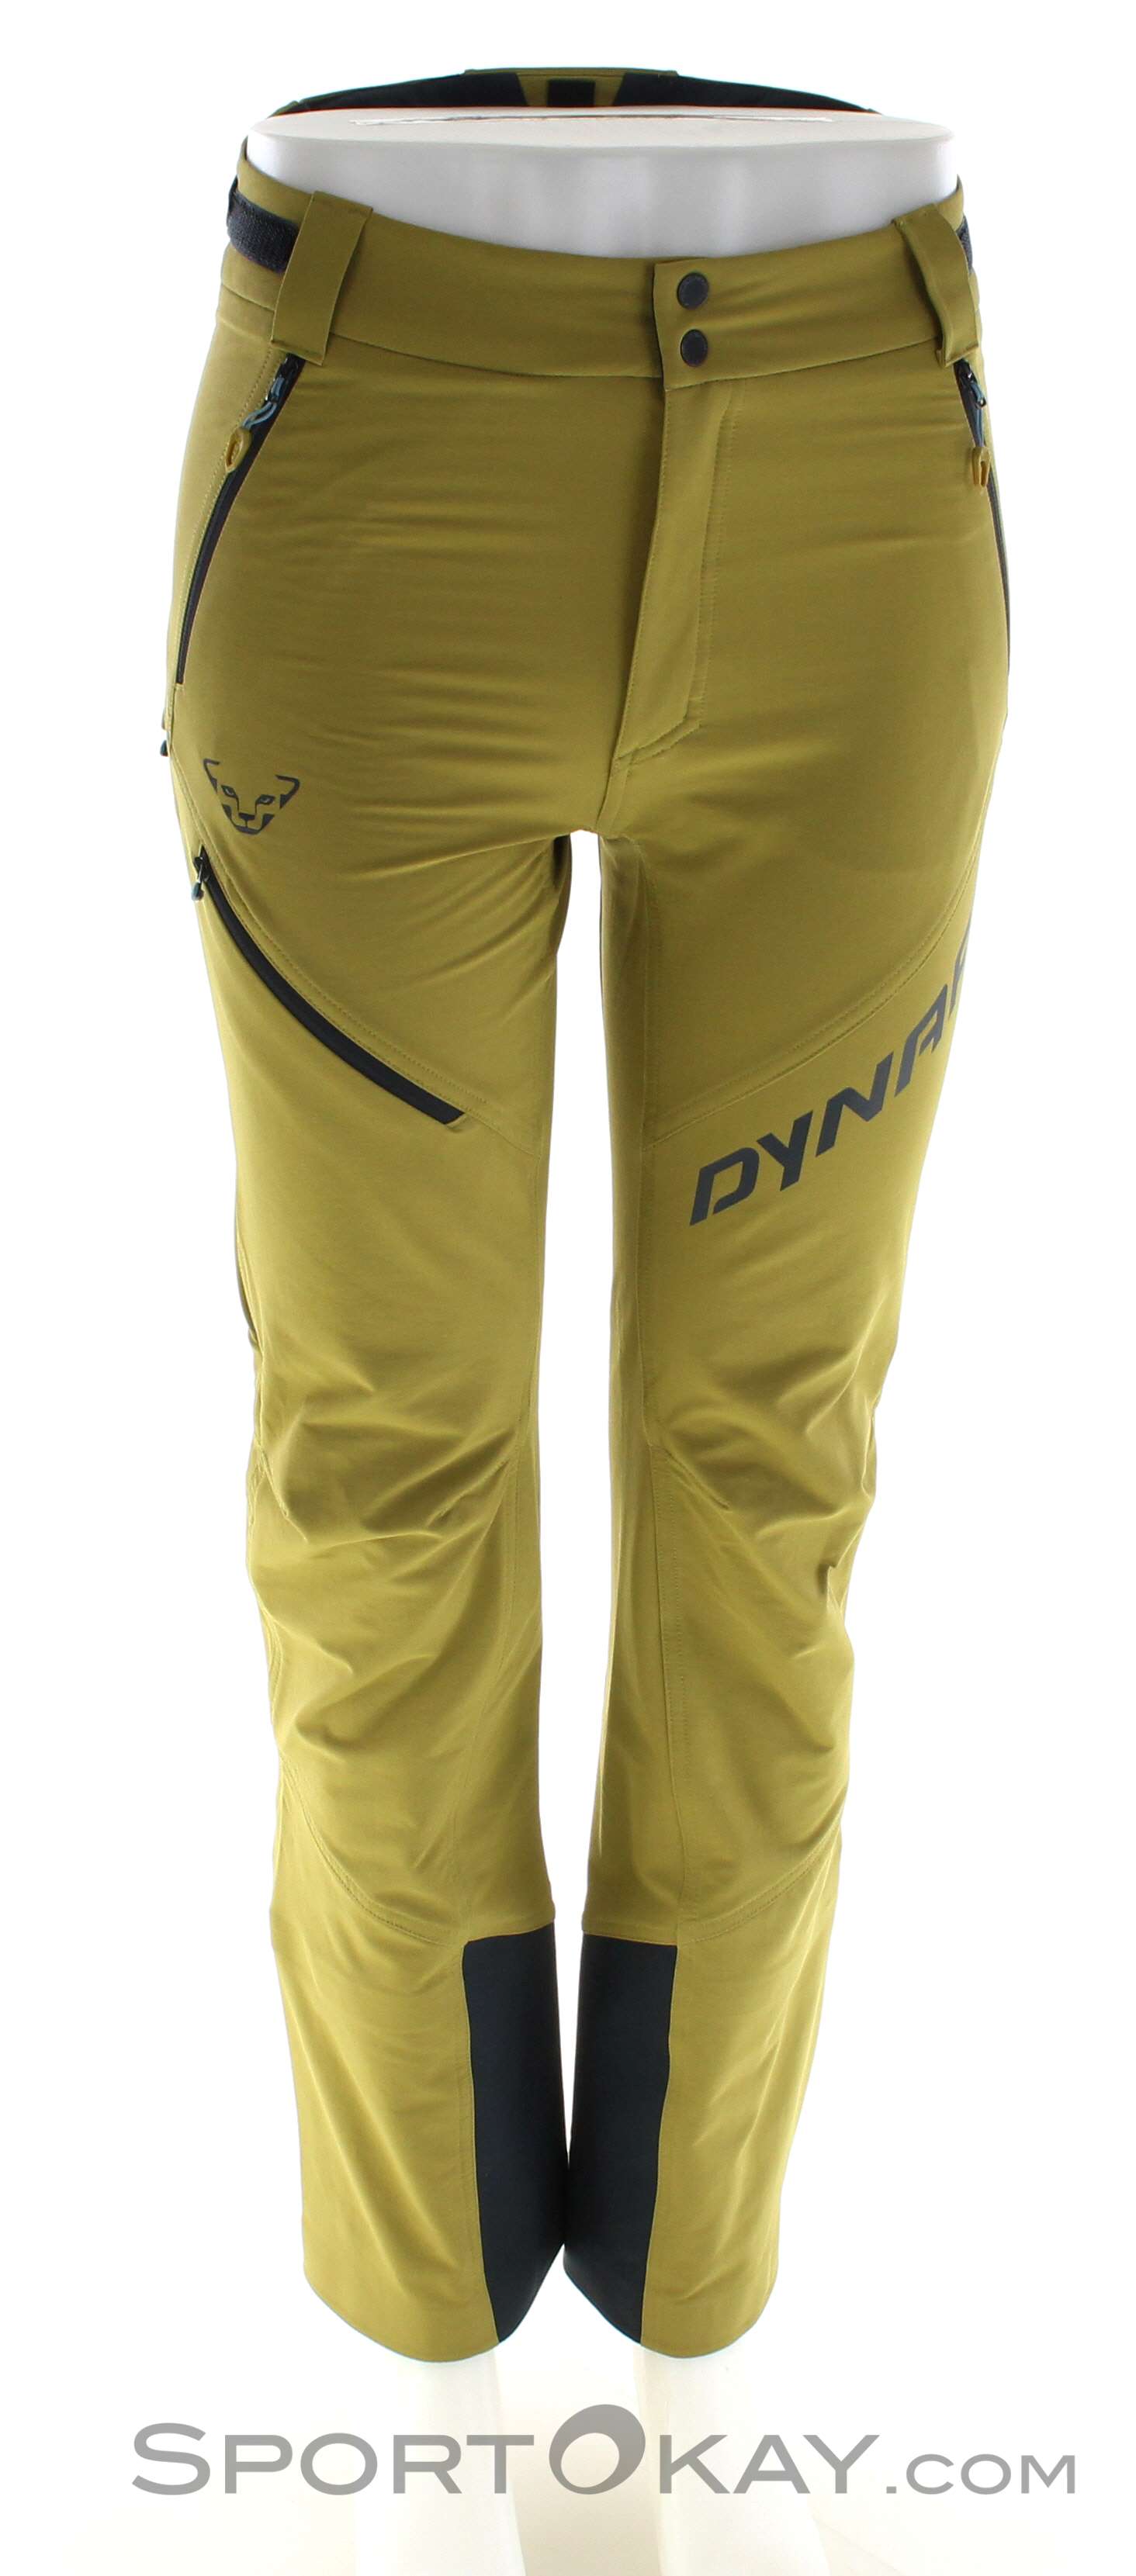 Dynafit Mercury Dynastretch Uomo Pantaloni da Sci Alpinismo - Pantaloni -  Abbigliamento da sci alpinismo - Sci alpinismo - Tutti